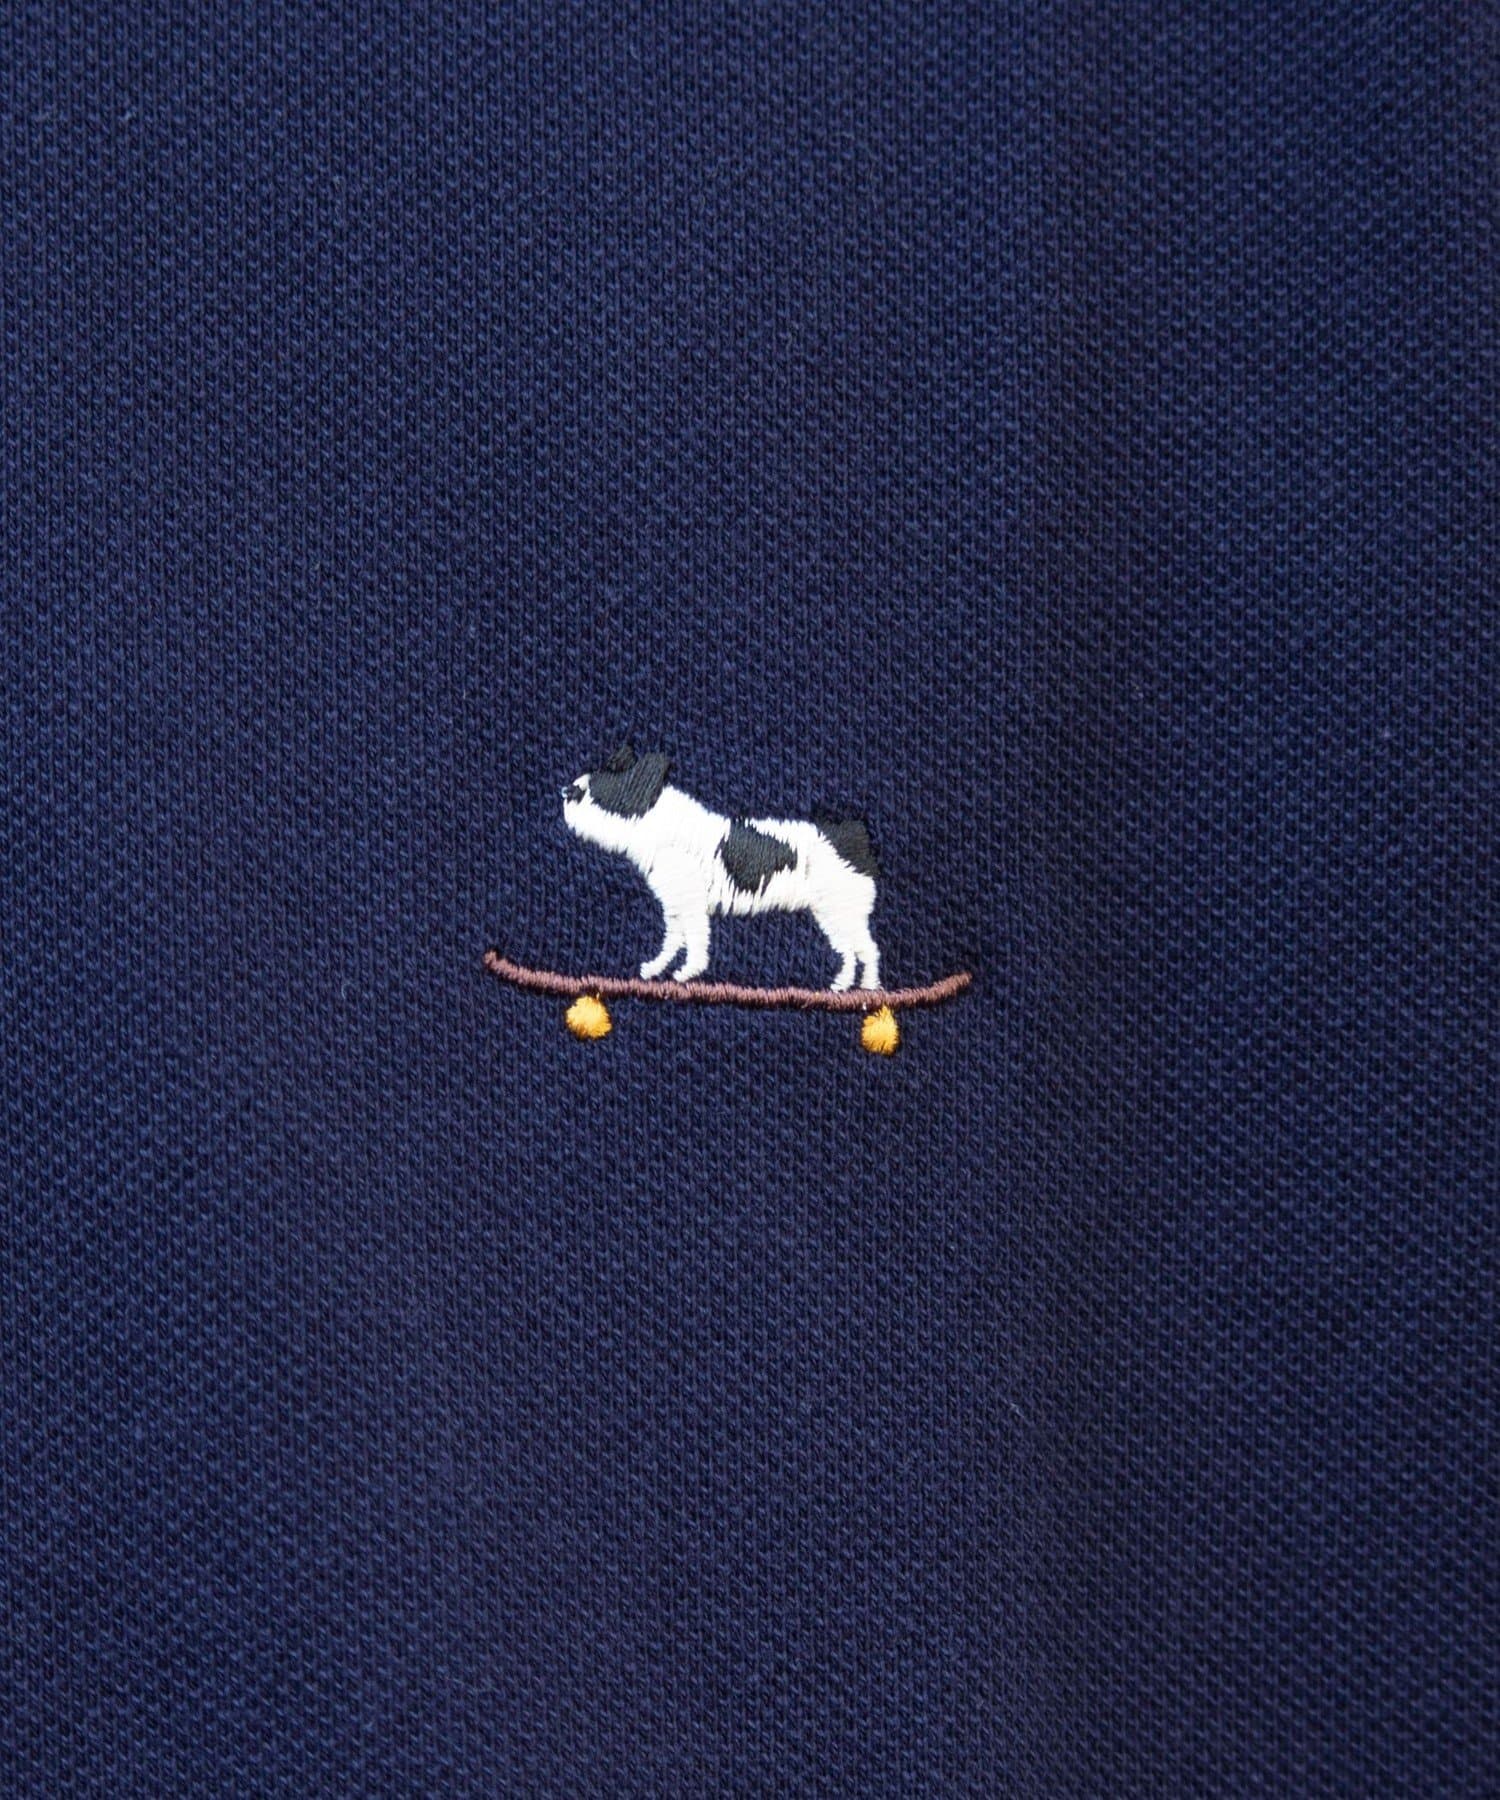 FREDY & GLOSTER(フレディ アンド グロスター) 【GLOSTER】フレンチブルドッグ刺繍 鹿の子 Tシャツ